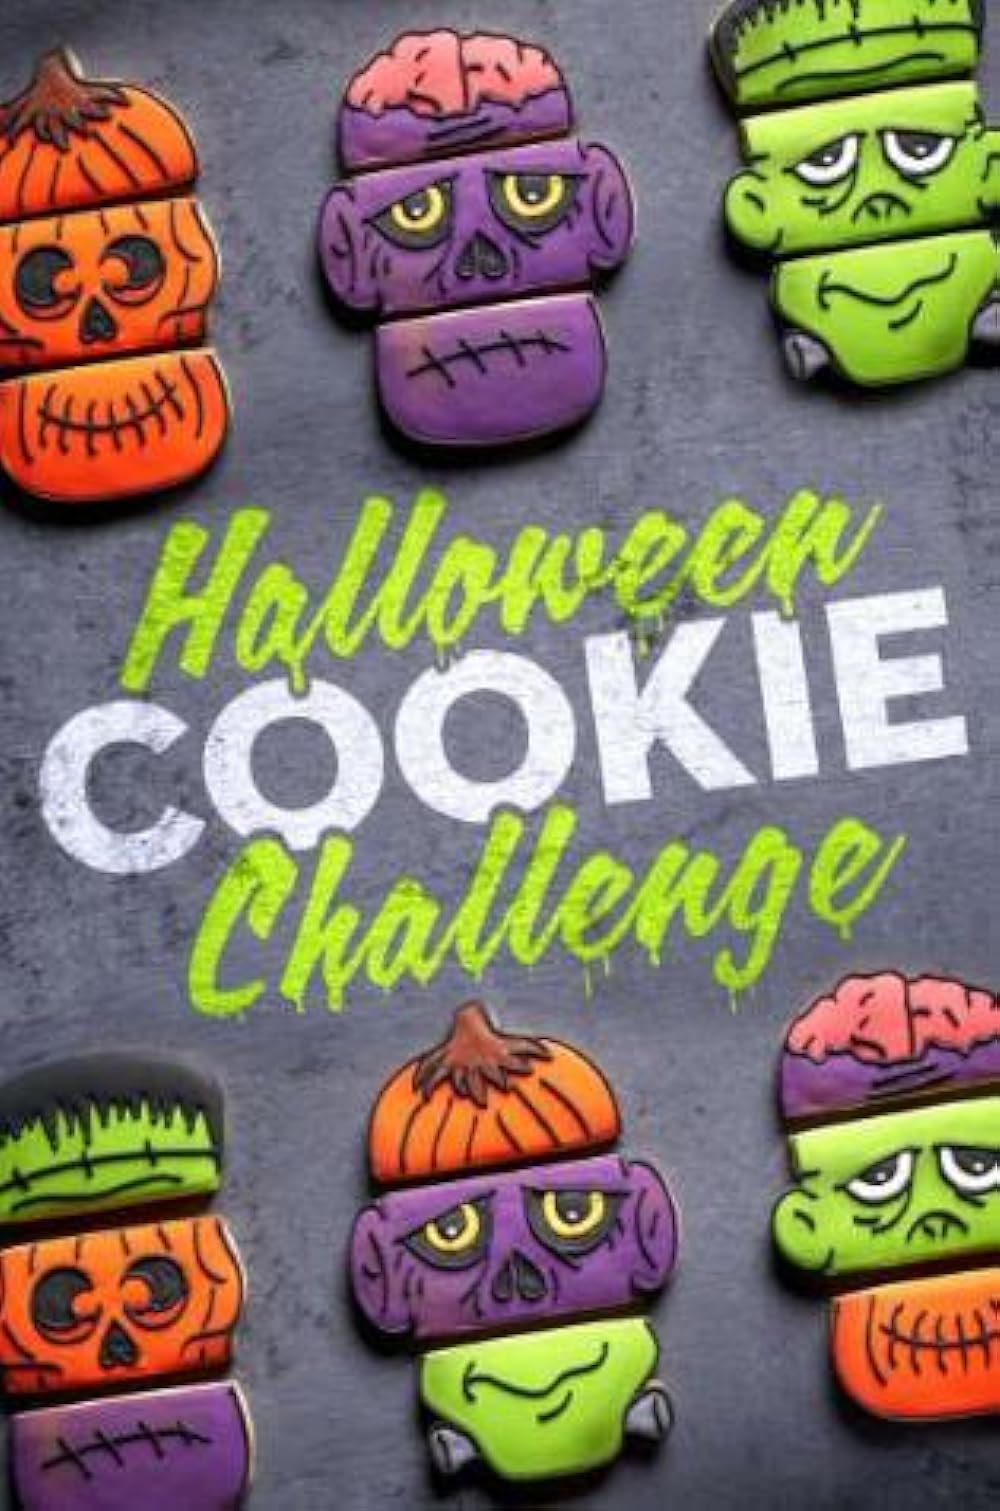 Halloween Cookie Challenge Torrent Download EZTV